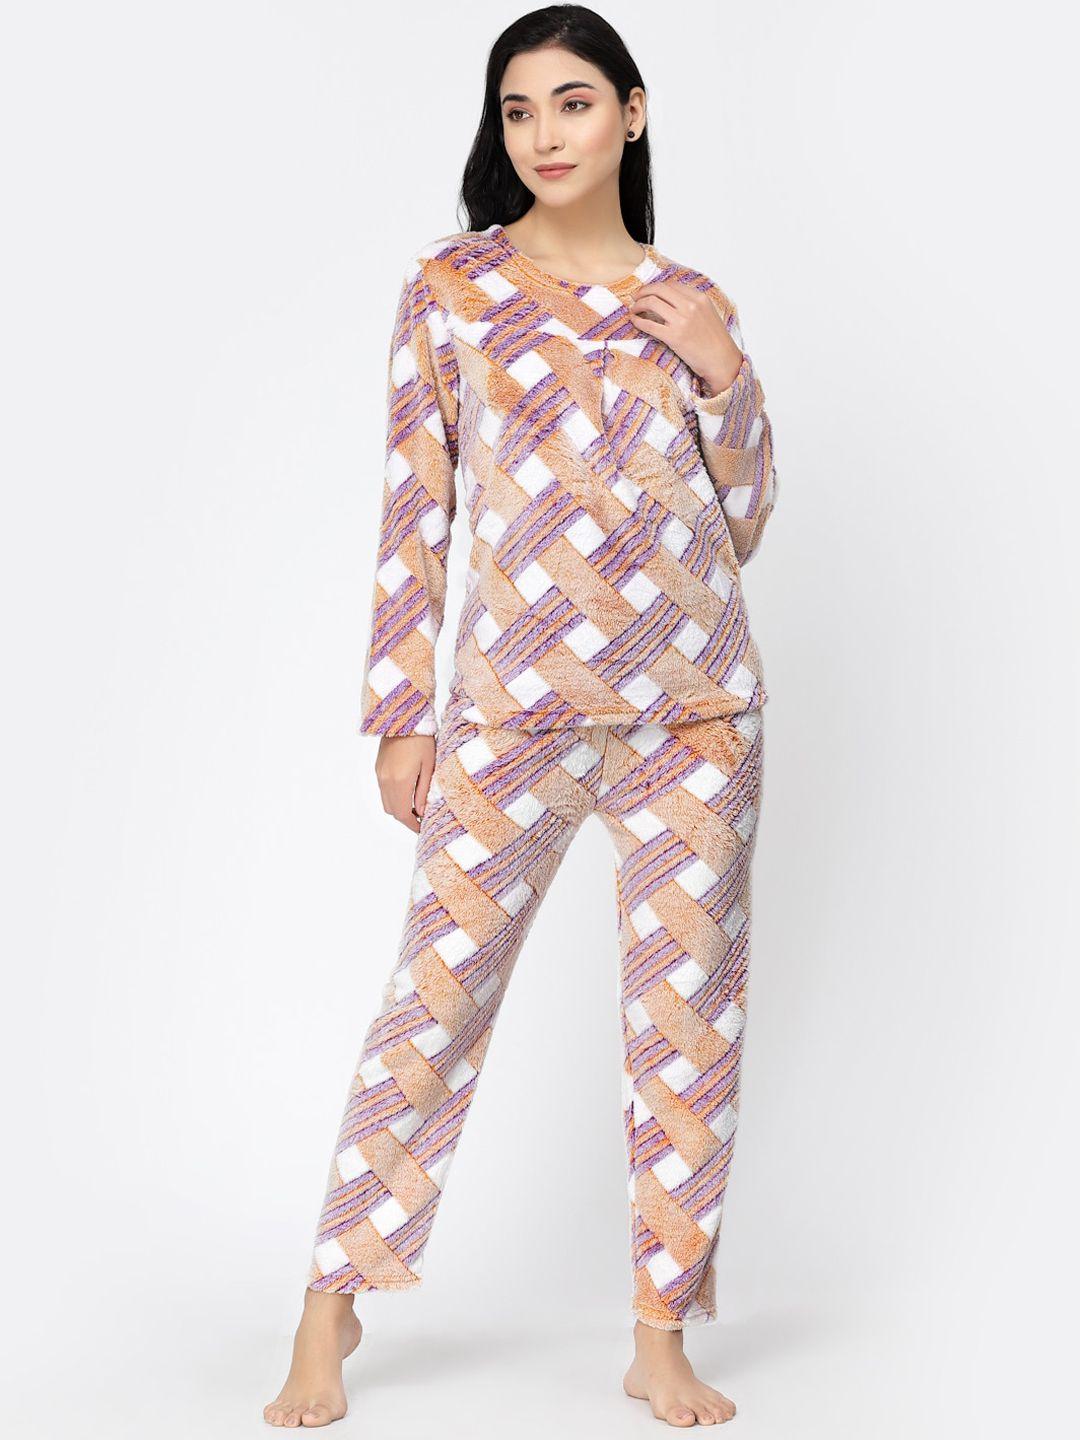 klotthe-geometric-printed-night-suit